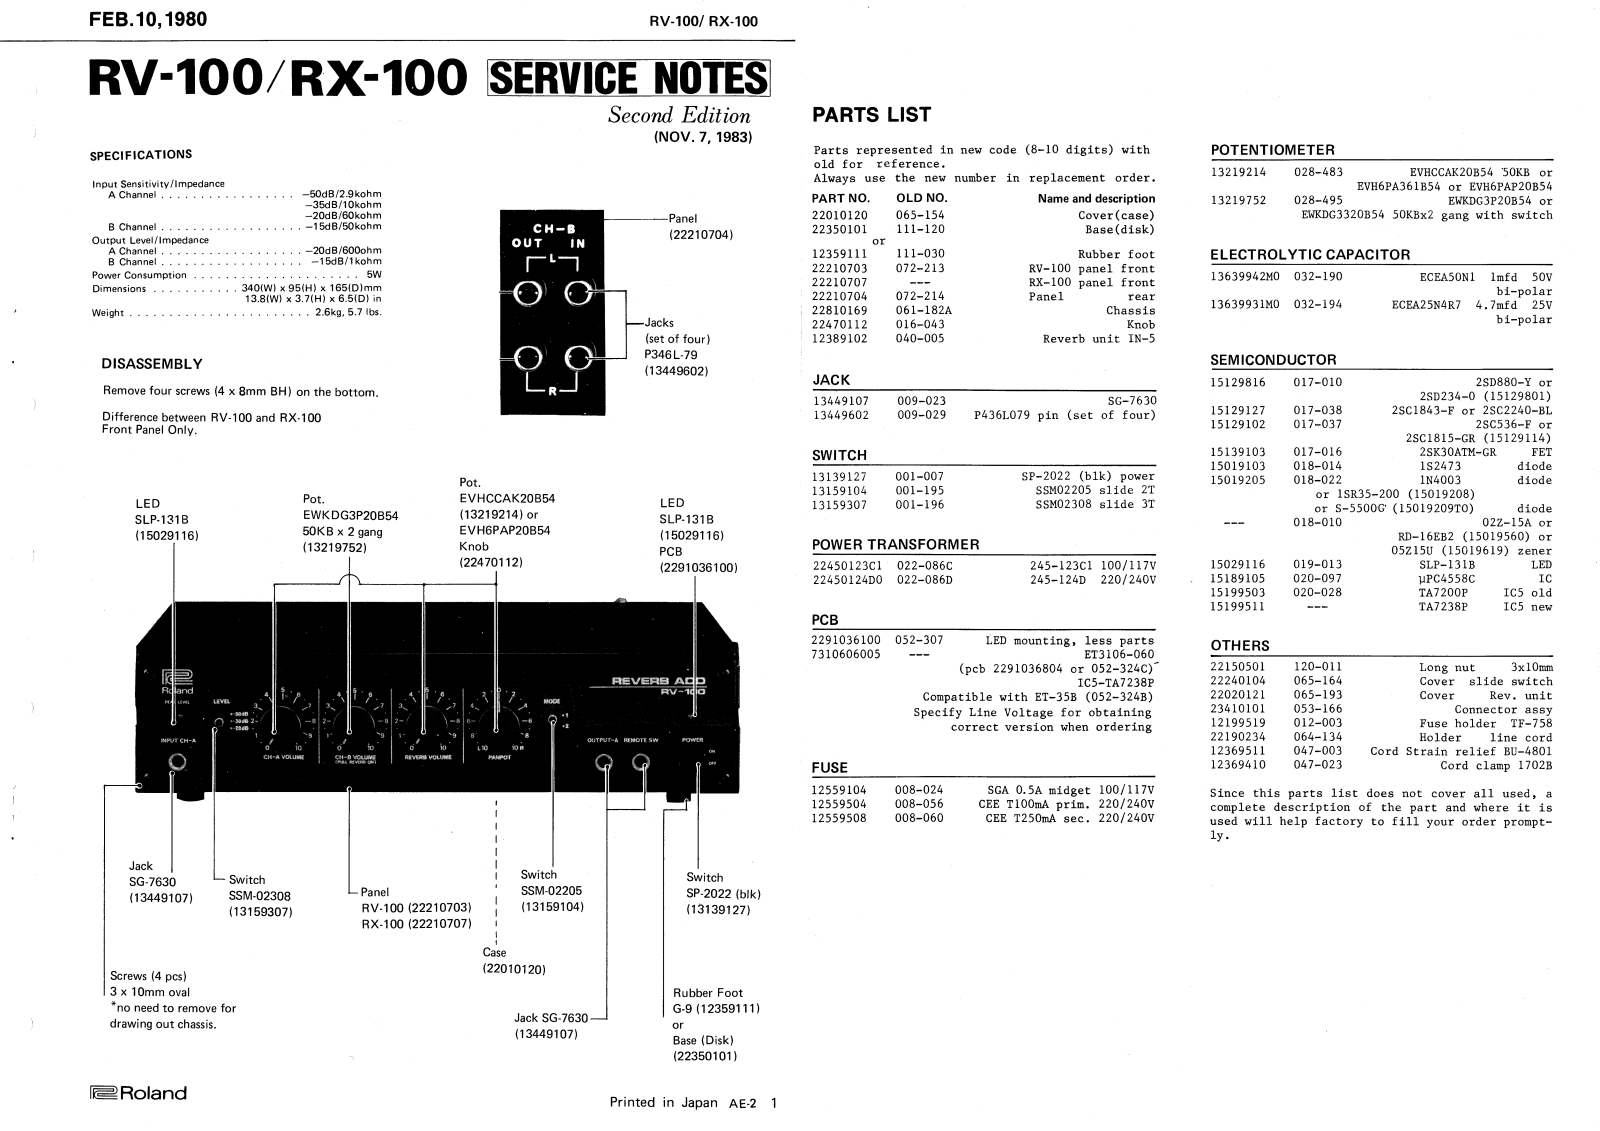 Roland RV-100, RX-100 Schematic